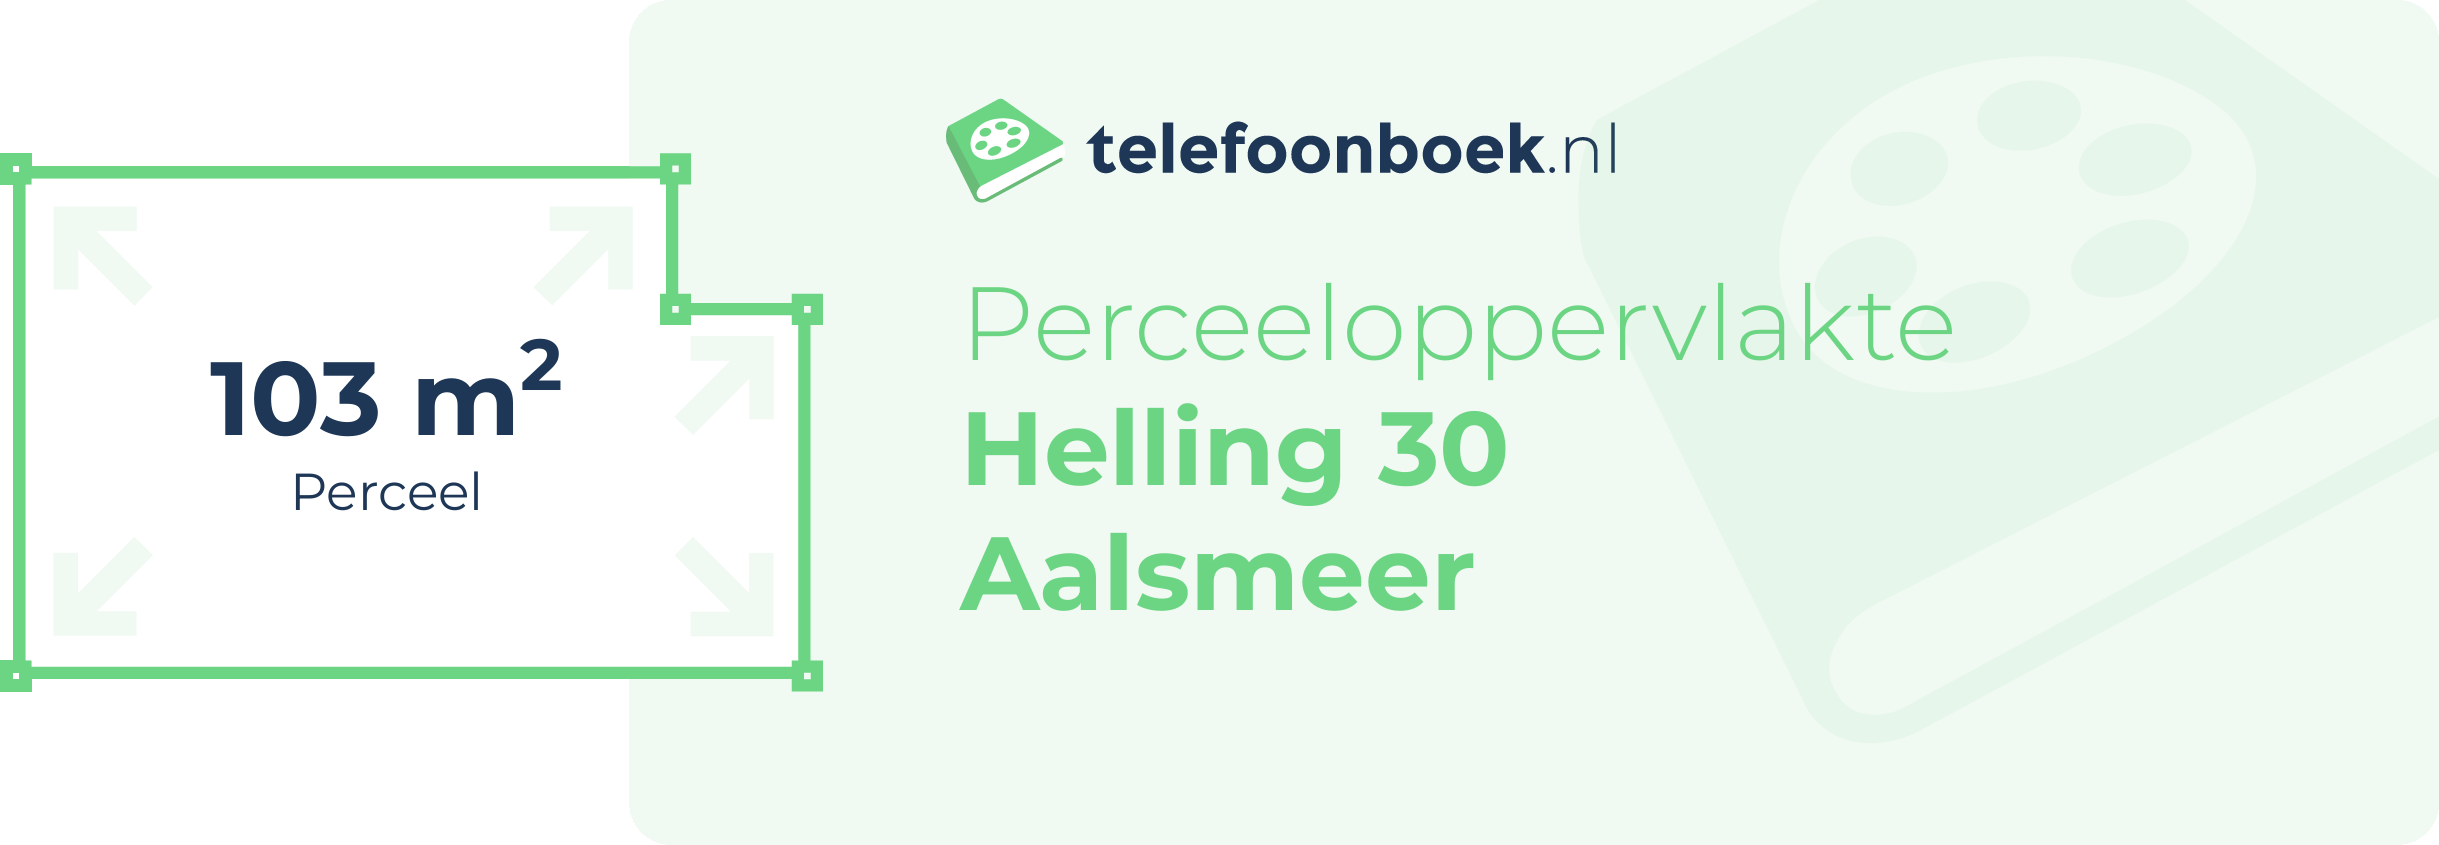 Perceeloppervlakte Helling 30 Aalsmeer